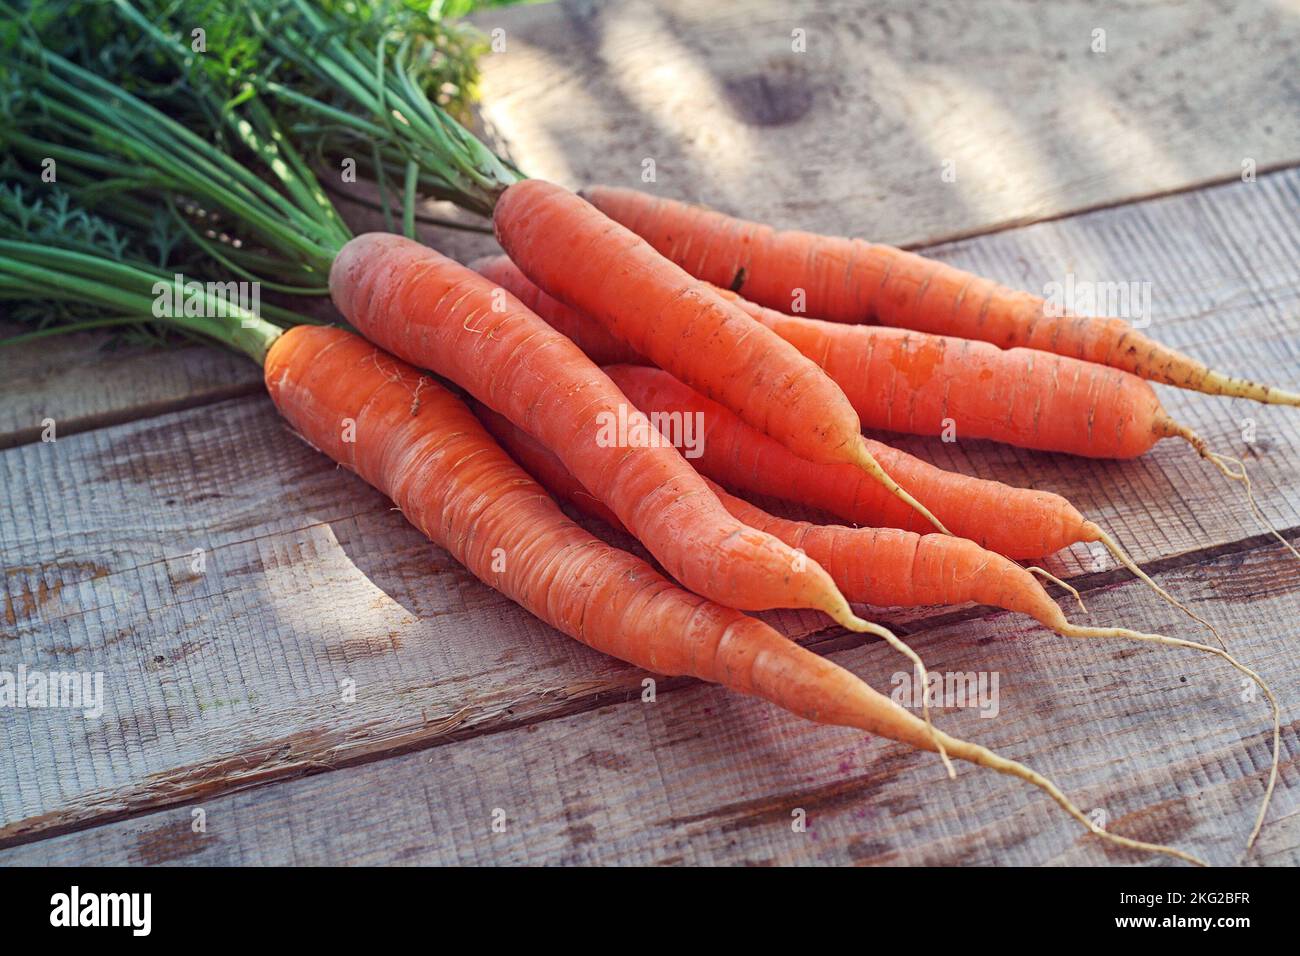 Karotte - ein Bund roter Karotten mit grünen Blättern auf einem Holztisch Stockfoto